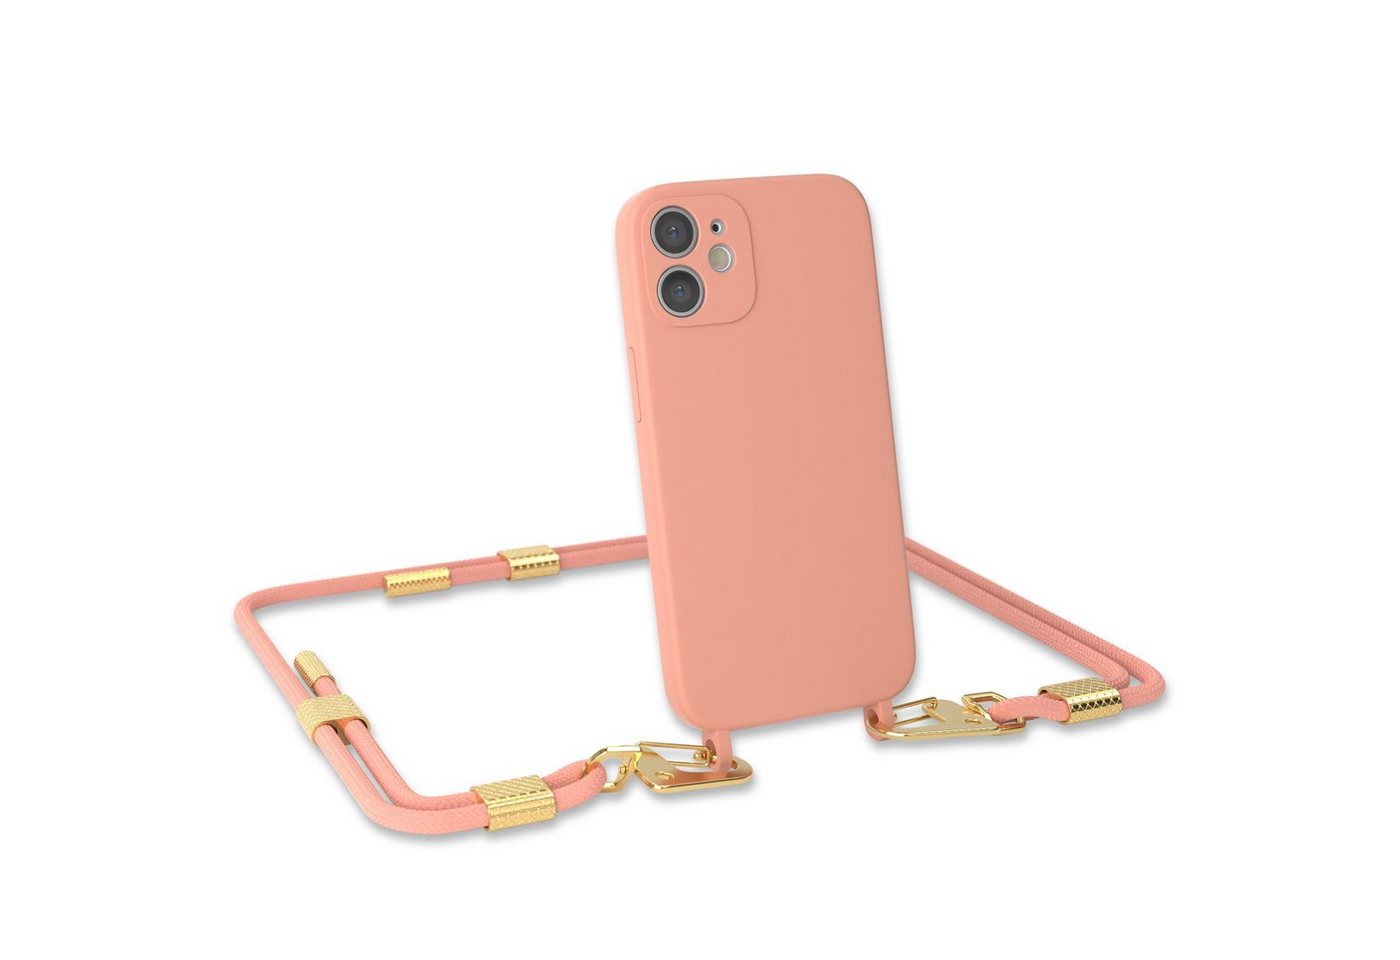 EAZY CASE Handykette Carabiner Chain für Apple iPhone 12 Mini 5,4 Zoll, 2 in 1 Handytasche farbige Silikon Hülle mit Umhängeband Altrosa Coral von EAZY CASE